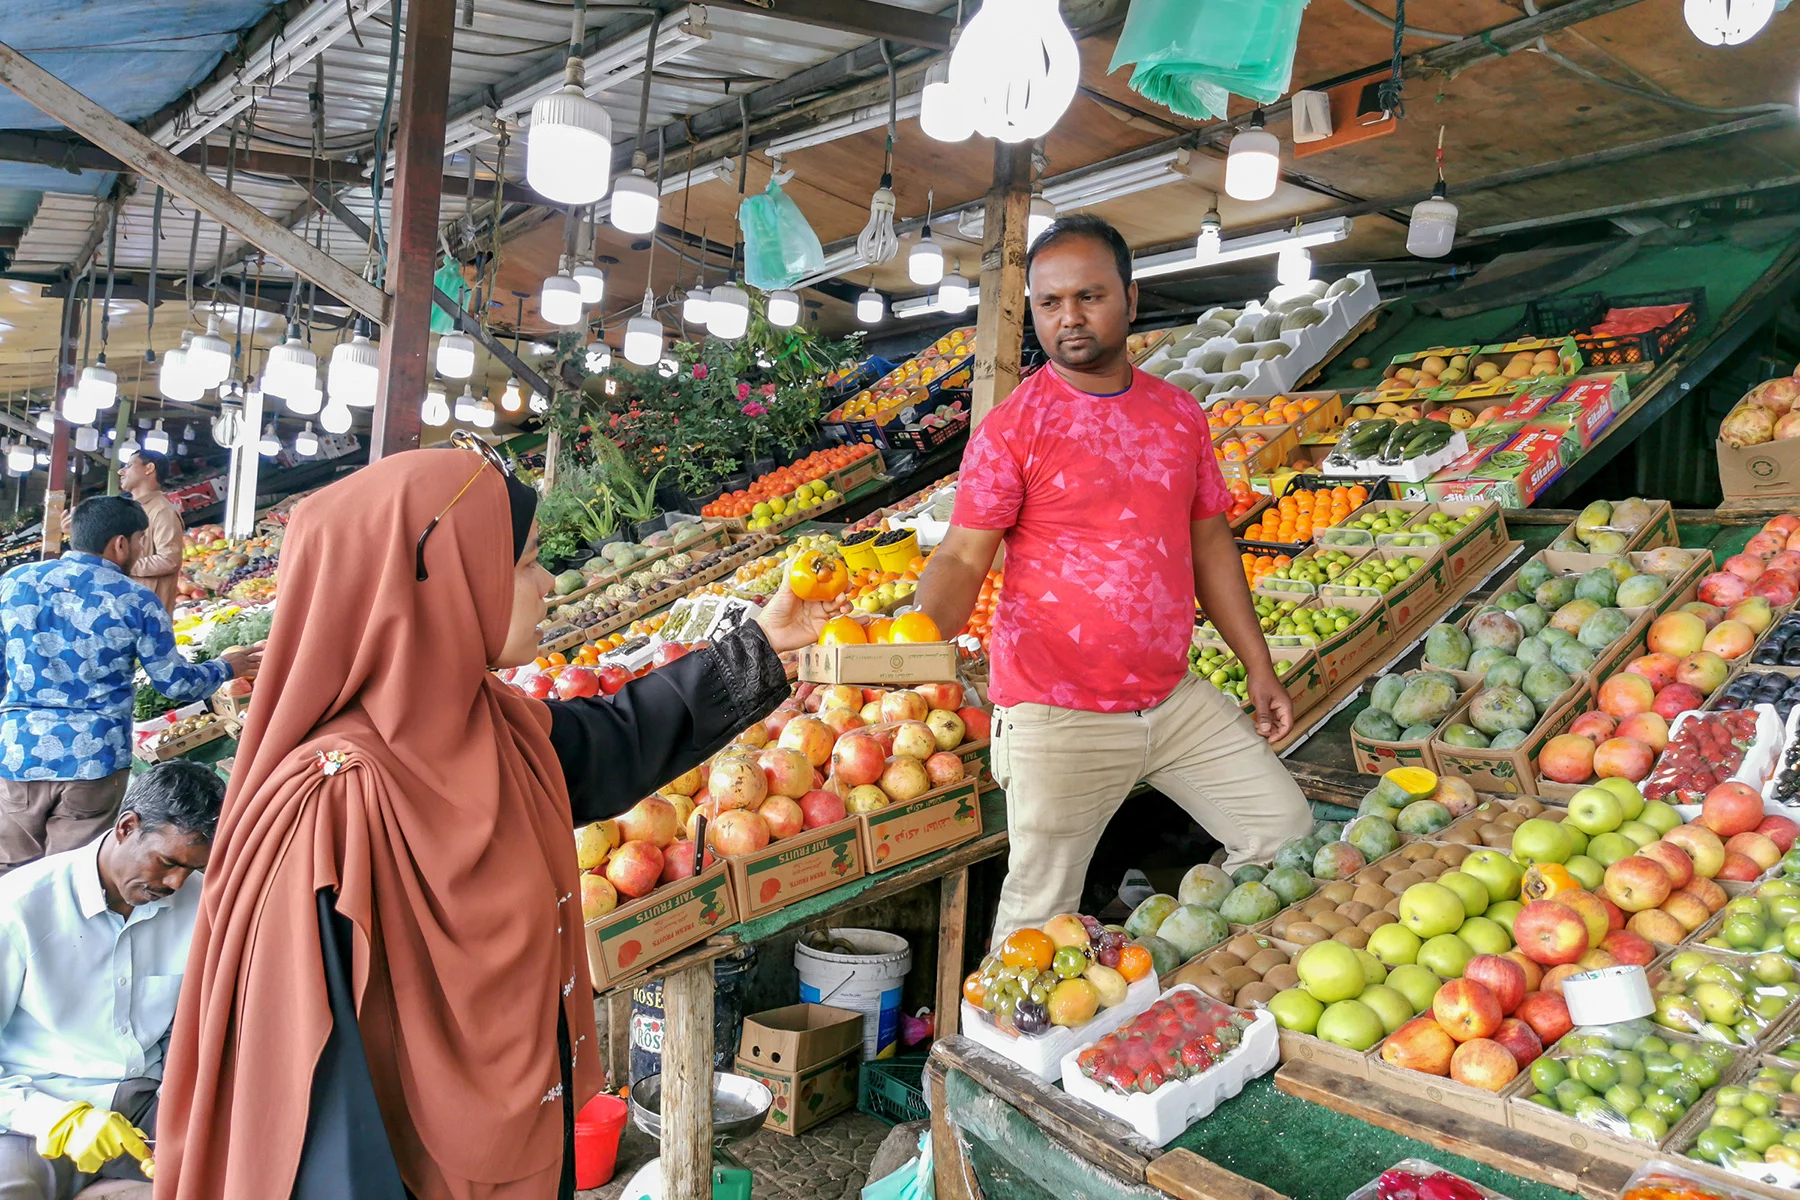 A market in Taif, Saudi Arabia